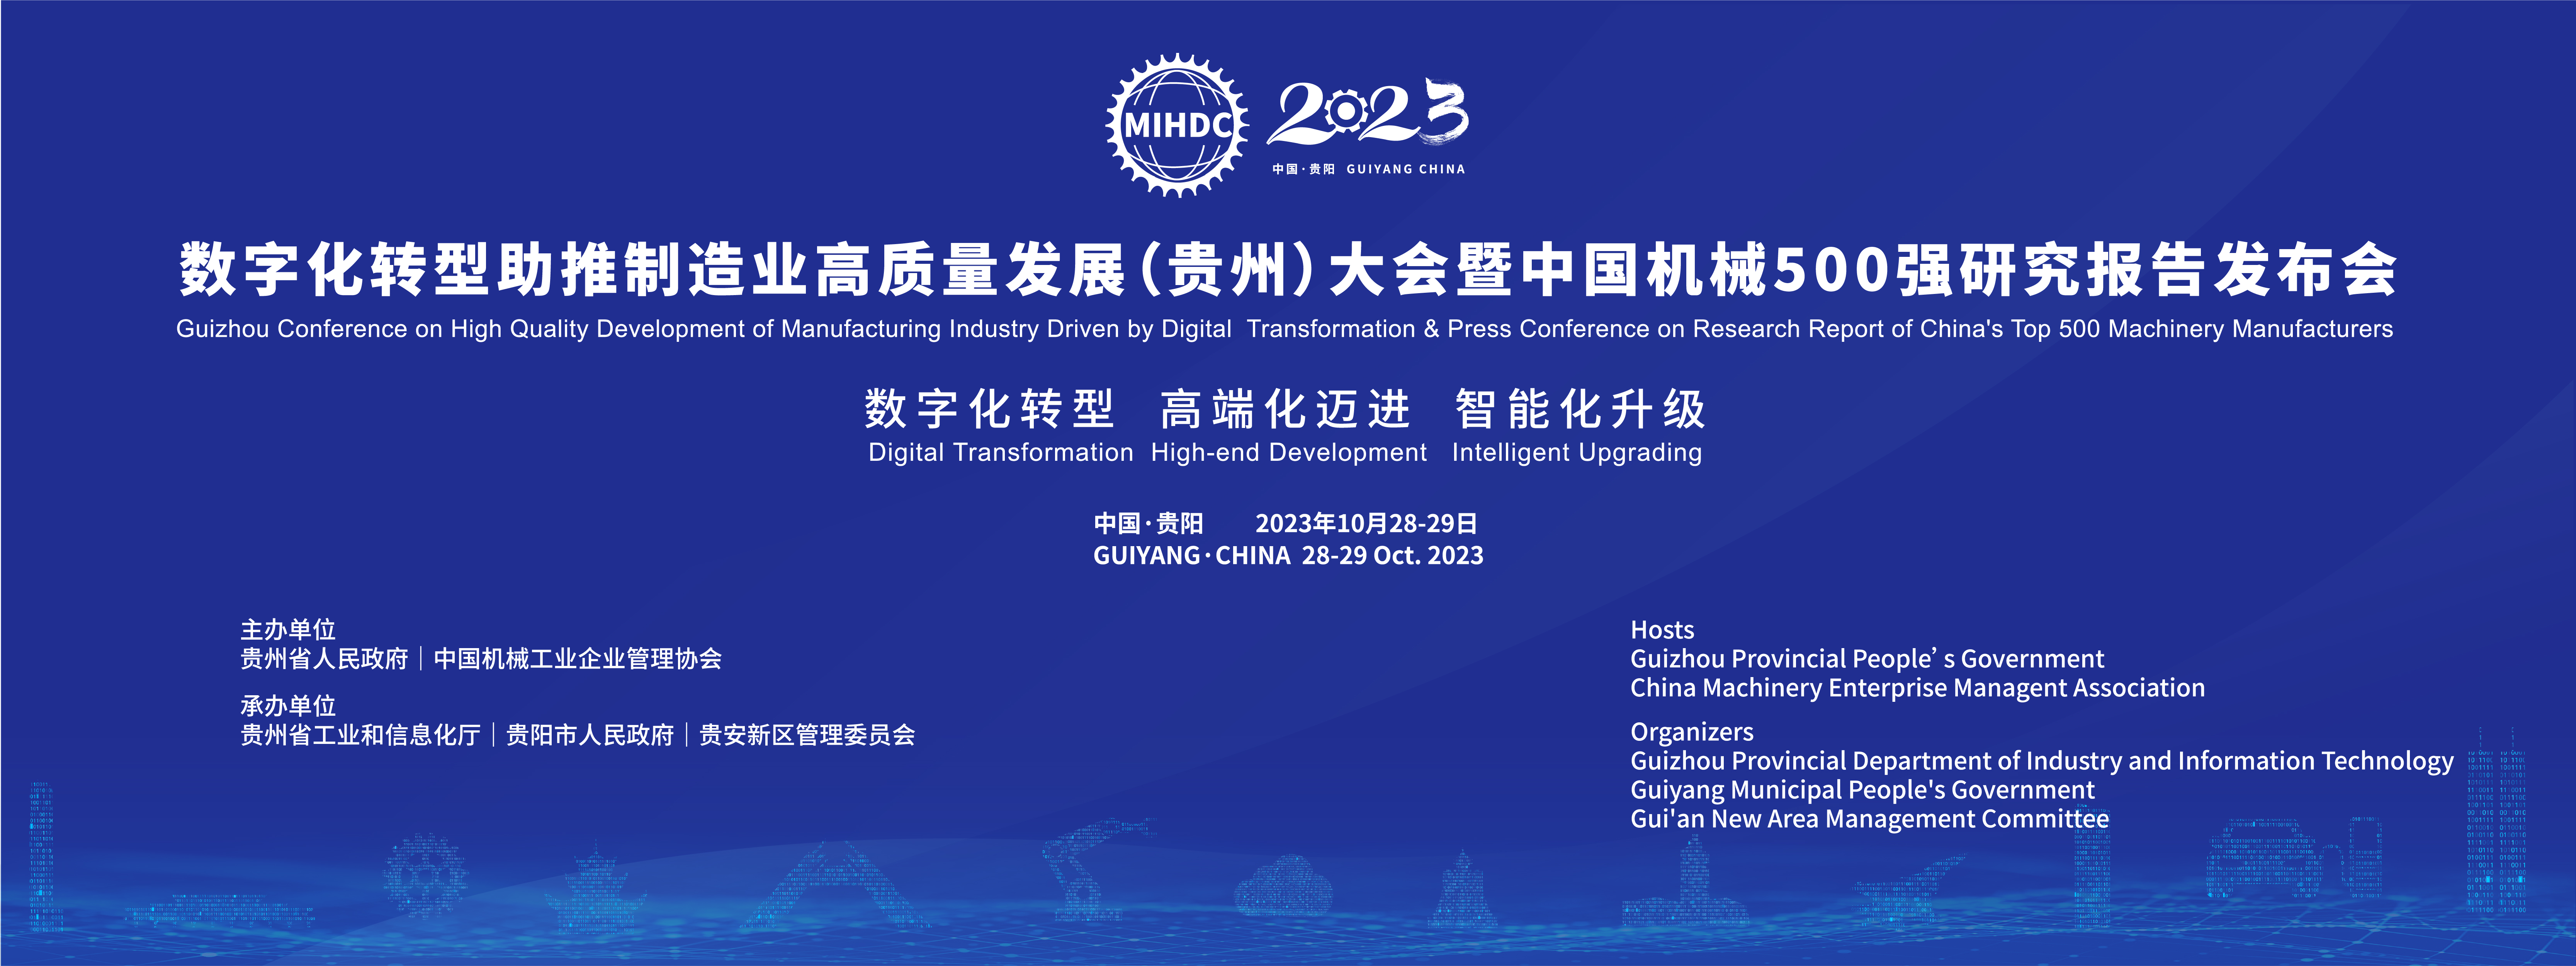 2023数字化转型助推制造业高质量发展大会将于10月28日在黔开幕